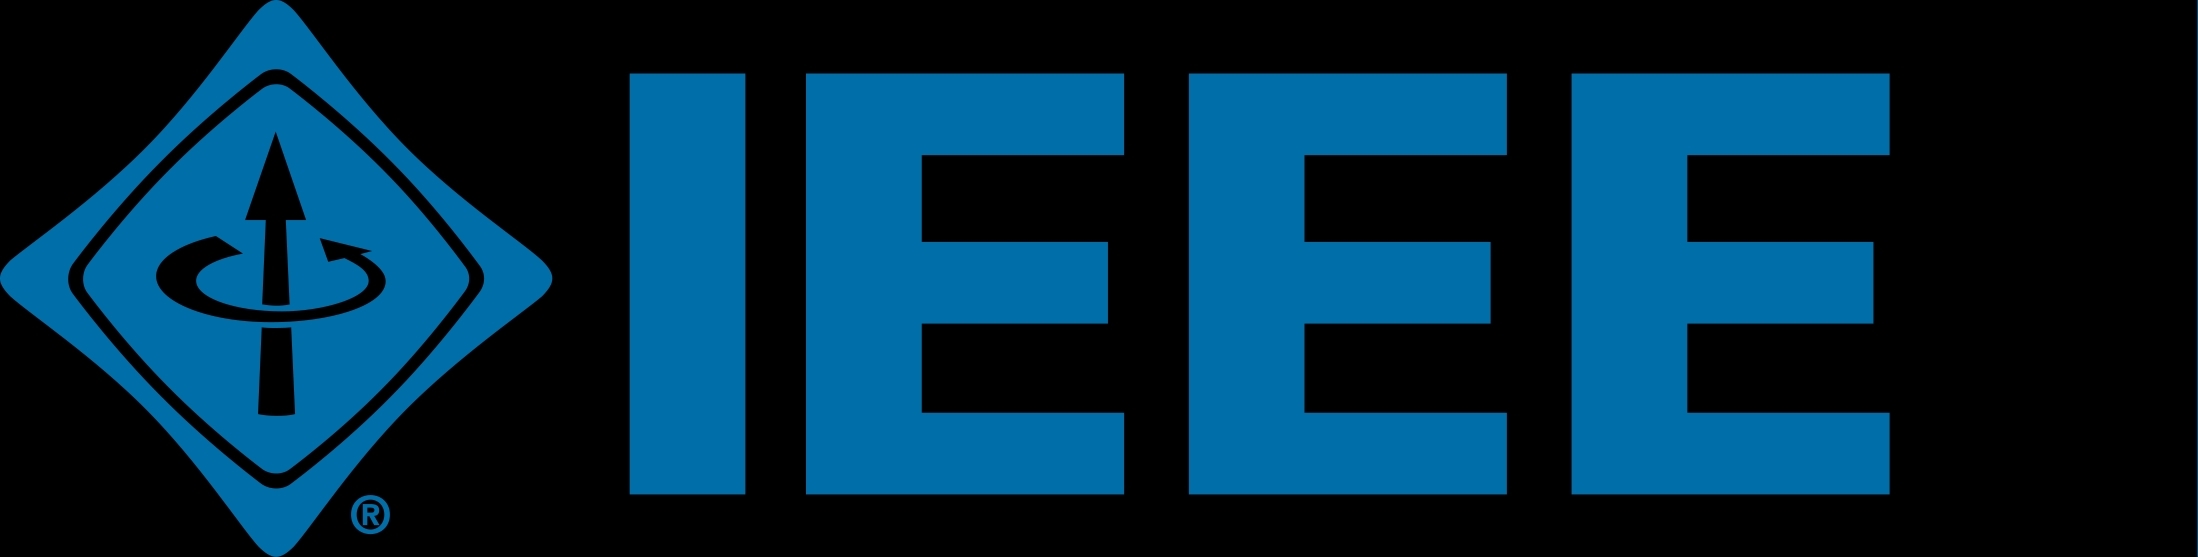 Marmara Elektrik ve Elektronik Mühendisleri Kulübü (IEEE)